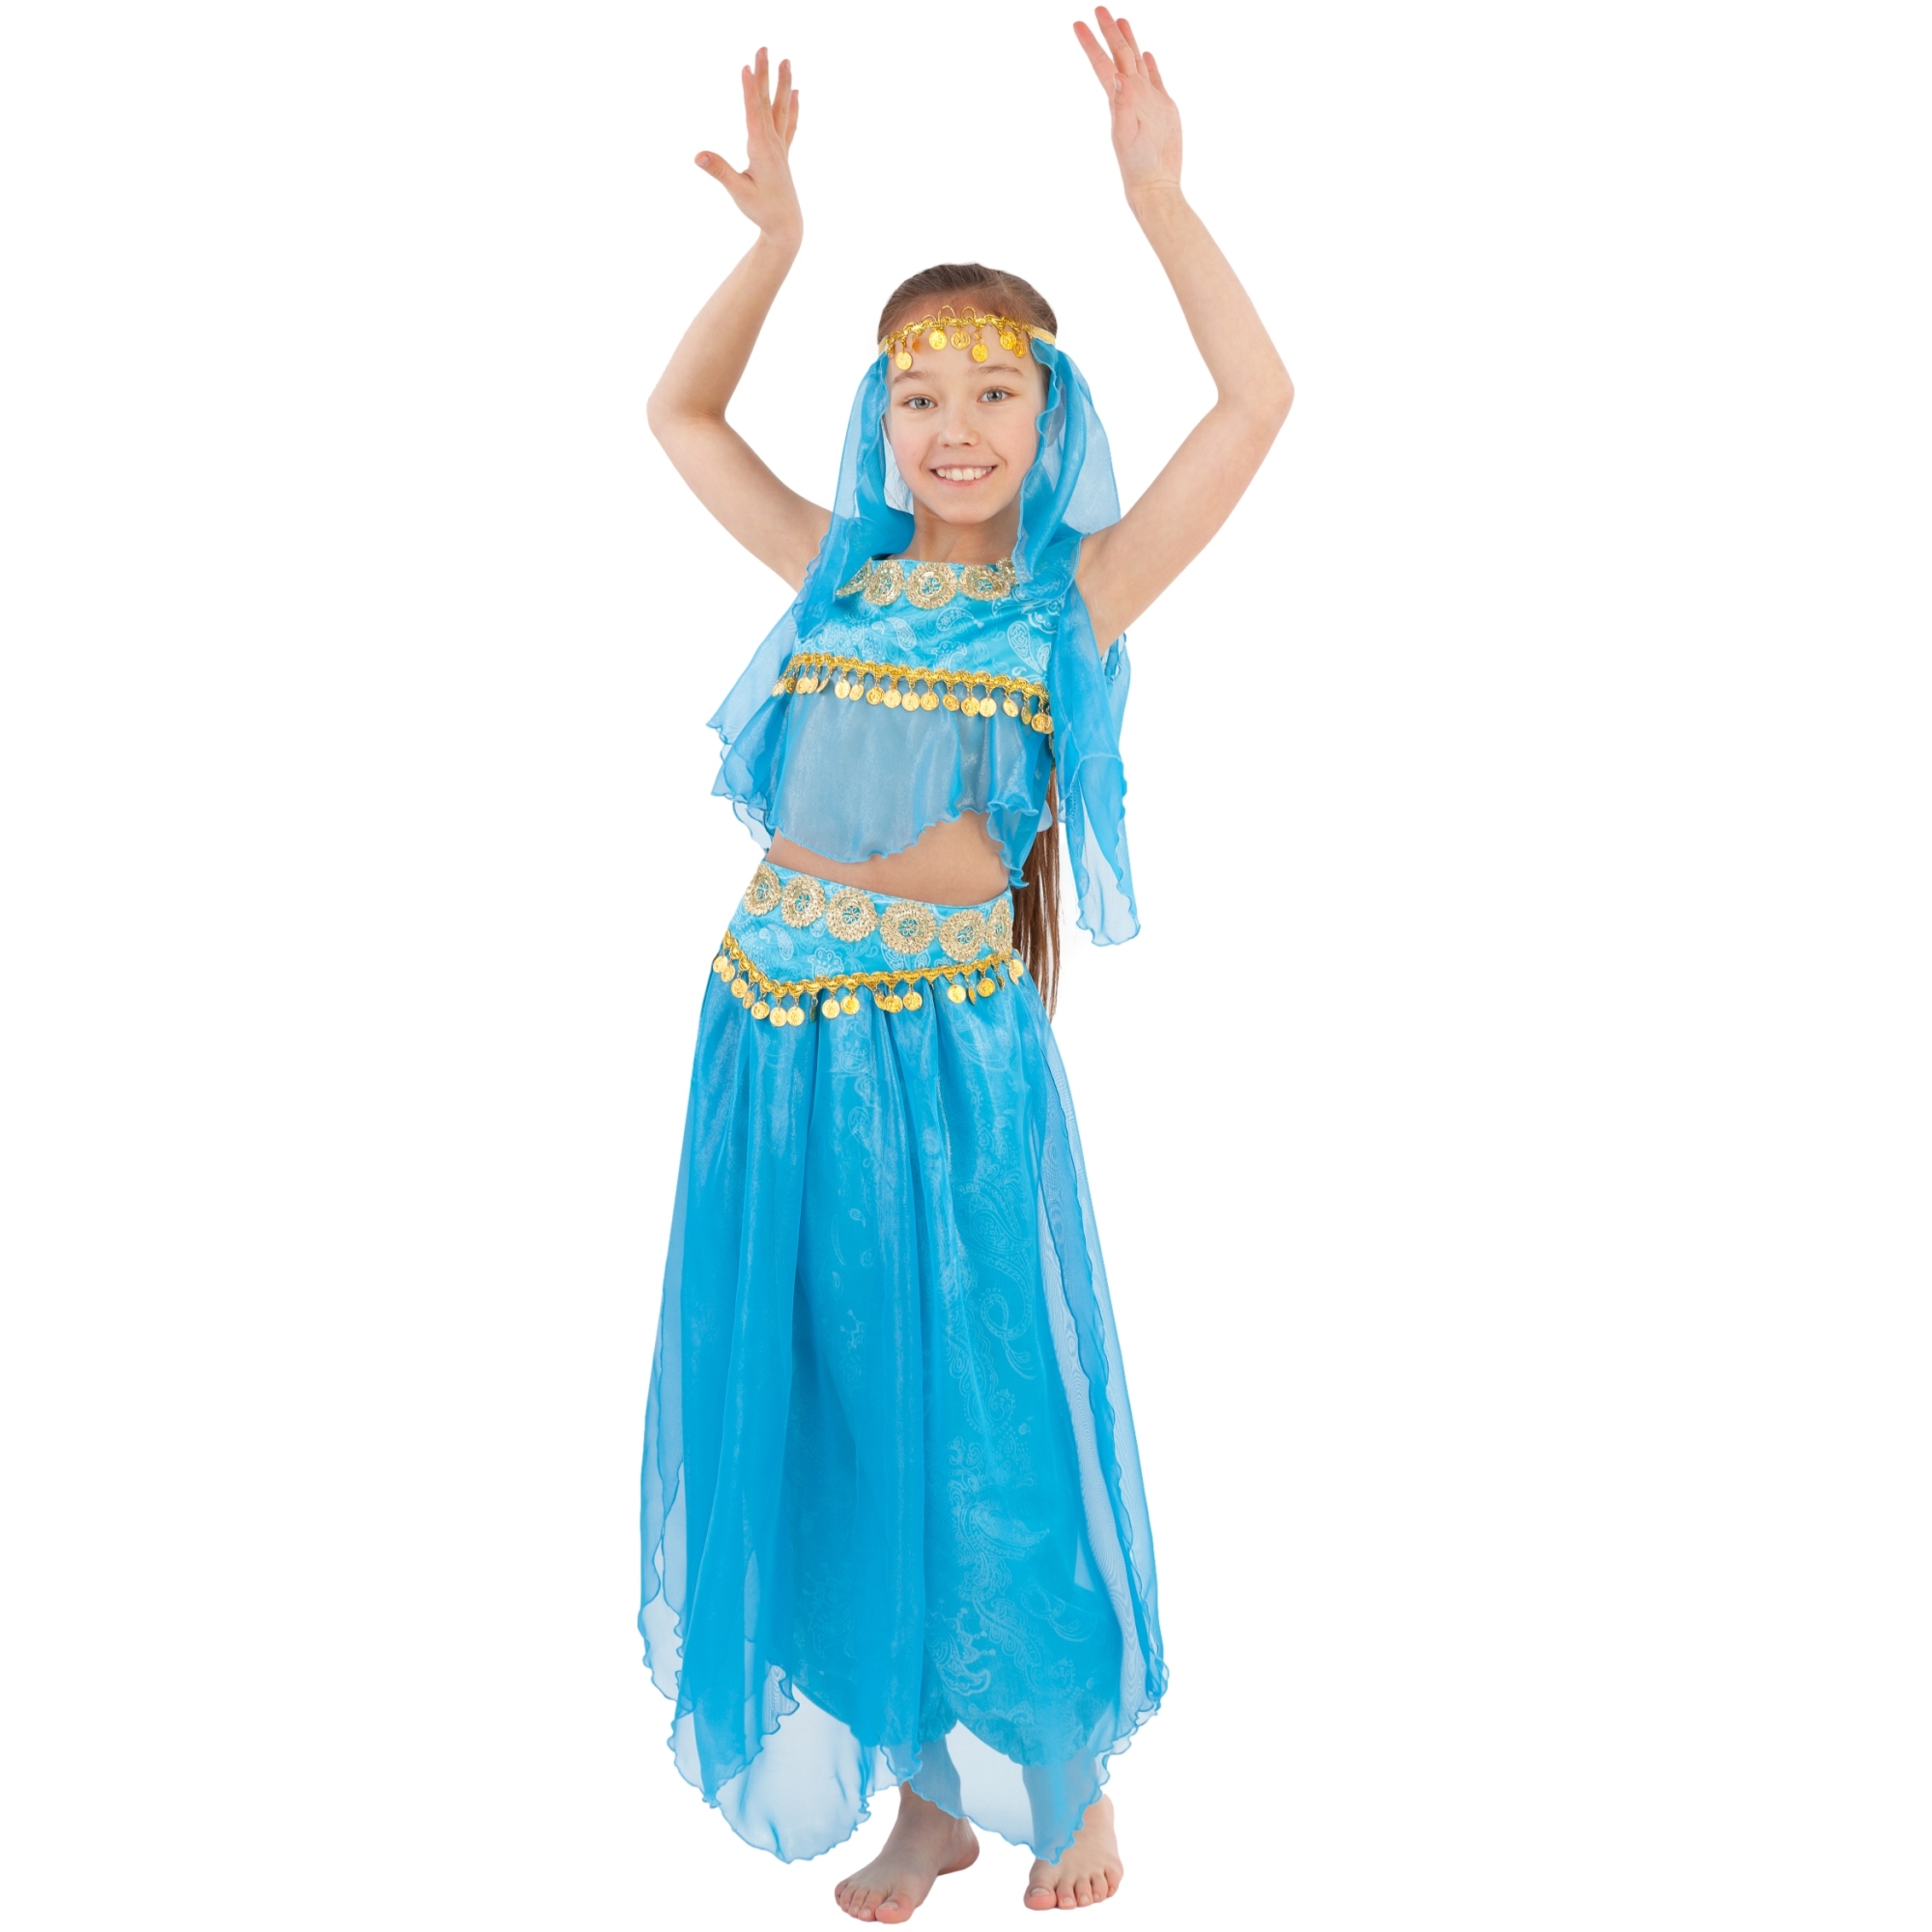 Карнавальный костюм "Восточная красавица" (топ, шаровары, манисты на голову, пояс) размер 128-64